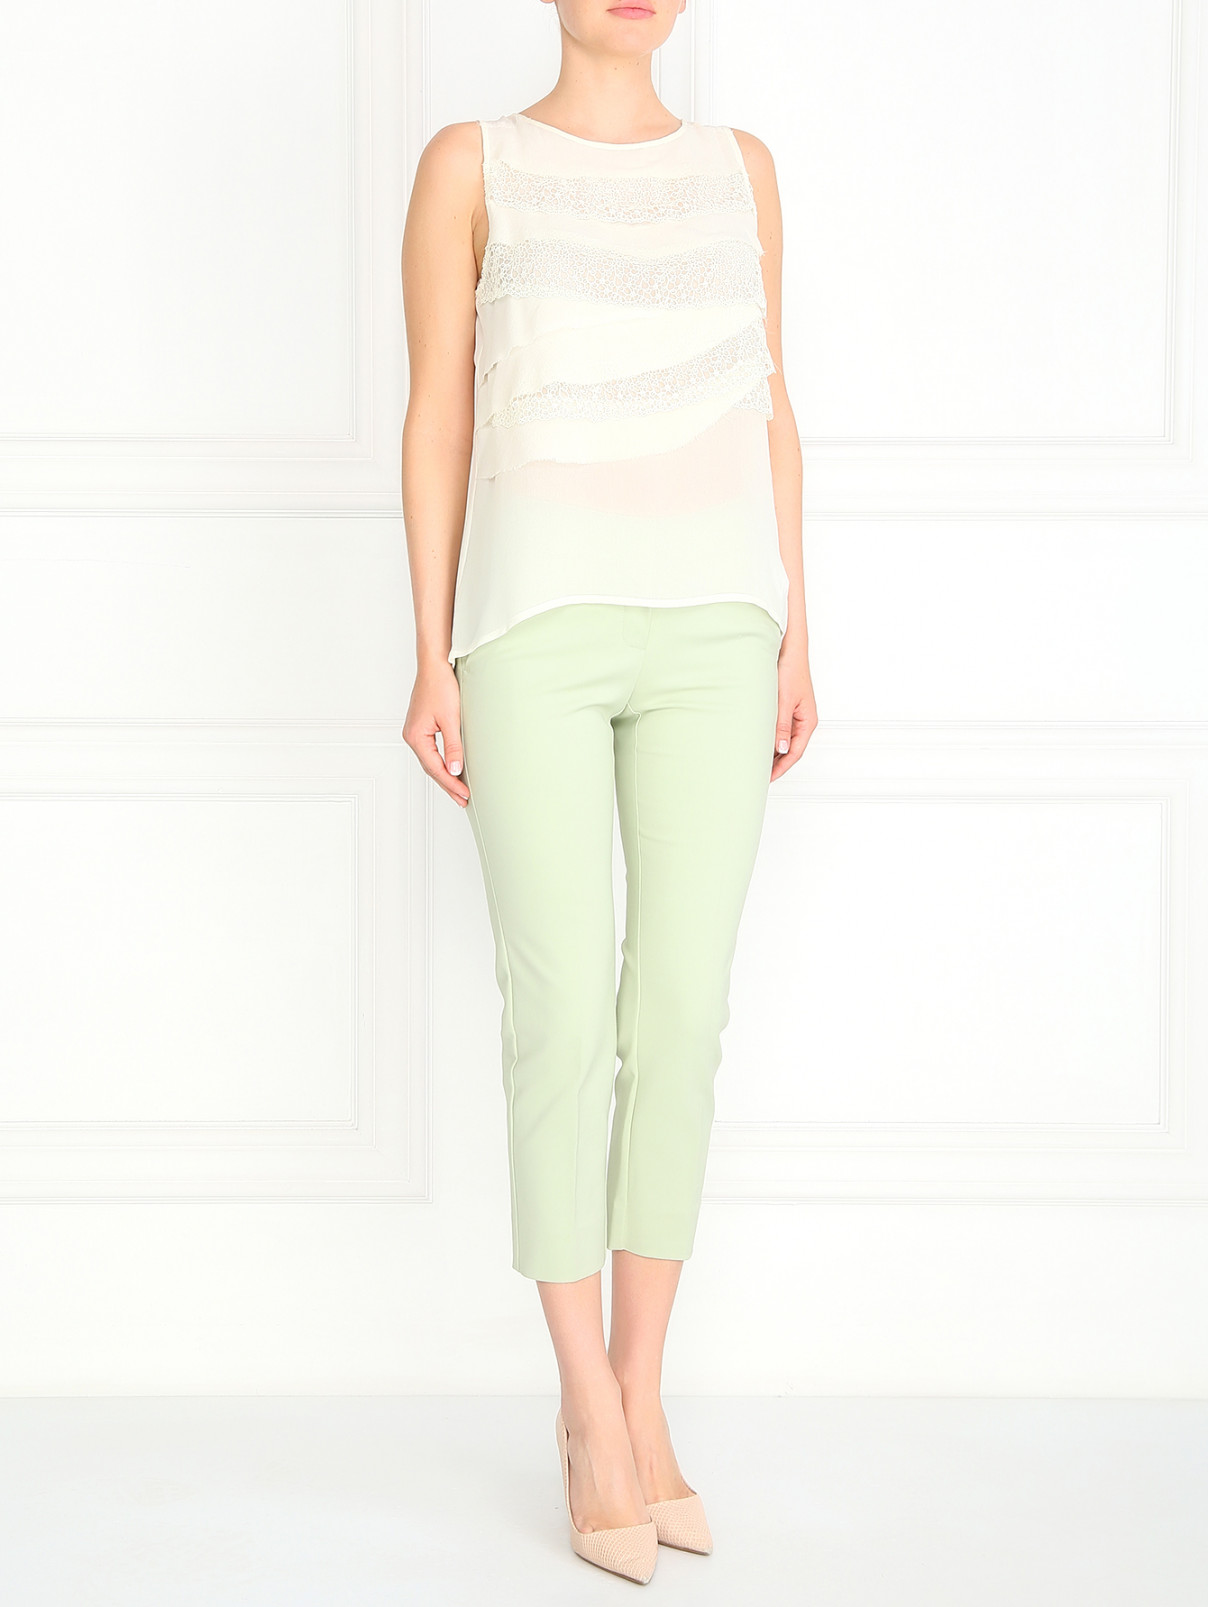 Прямые брюки со стрелками из хлопка Max&Co  –  Модель Общий вид  – Цвет:  Зеленый